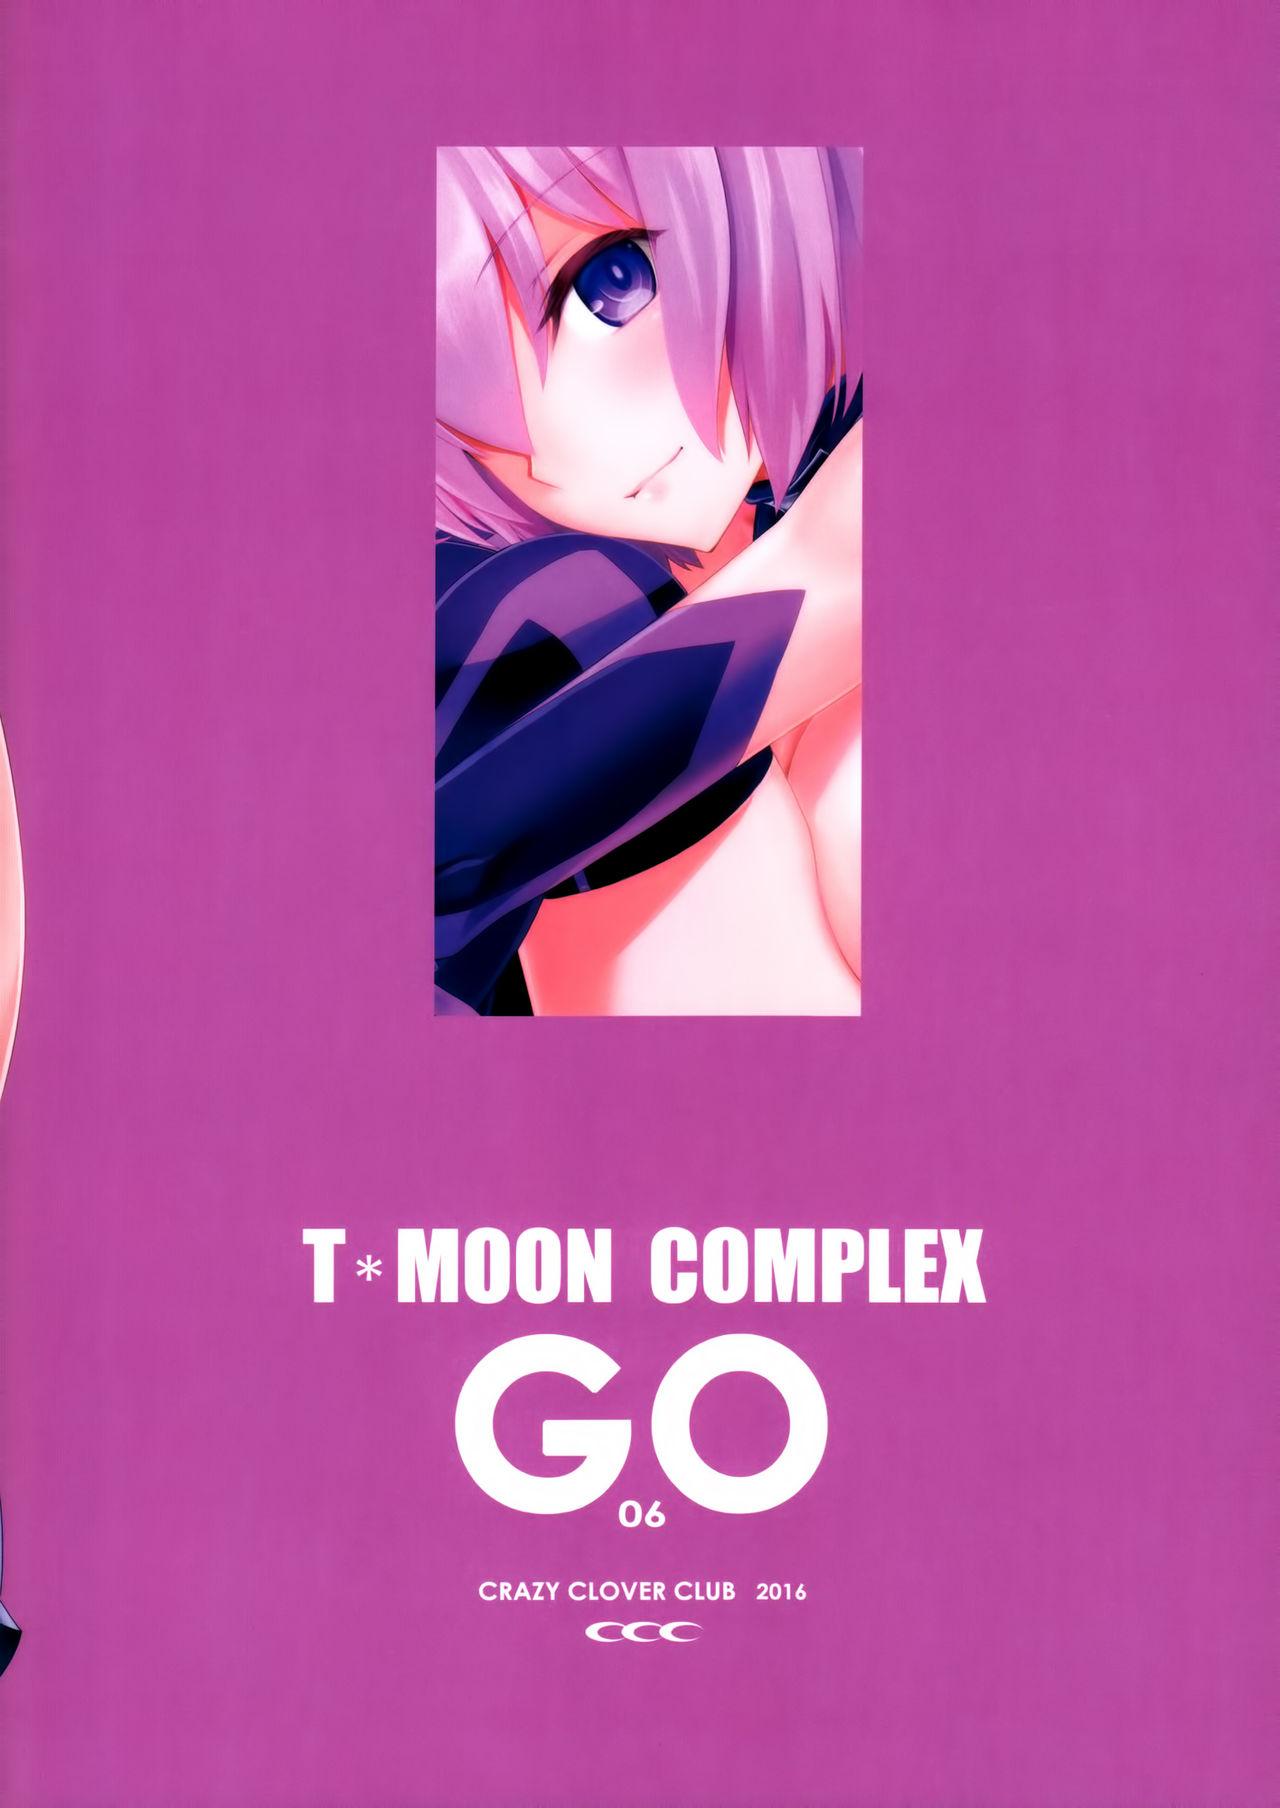 T*MOON COMPLEX GO 06 25